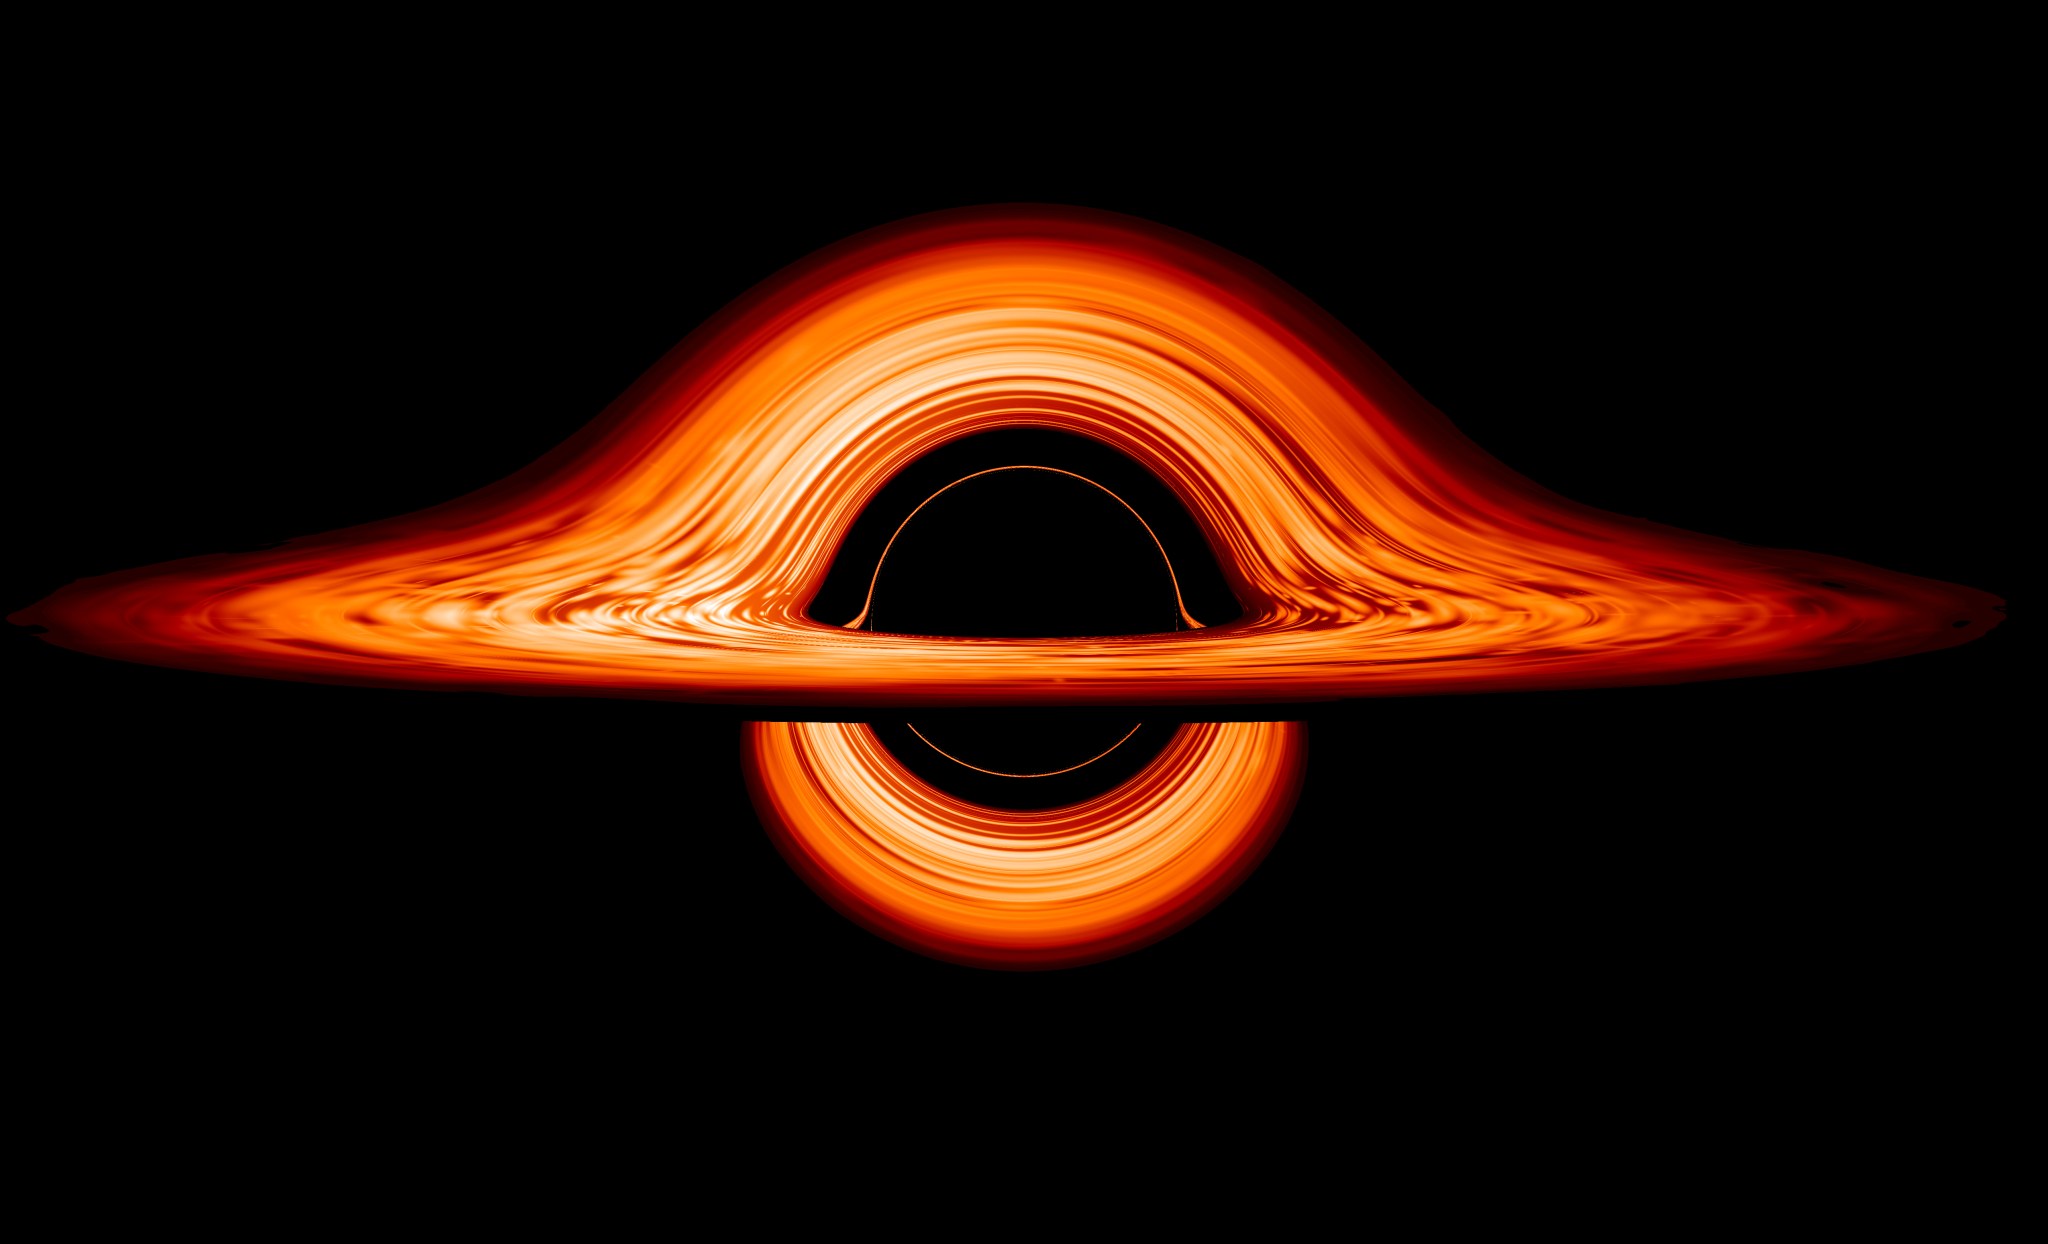 Bright orange disk around a black hole